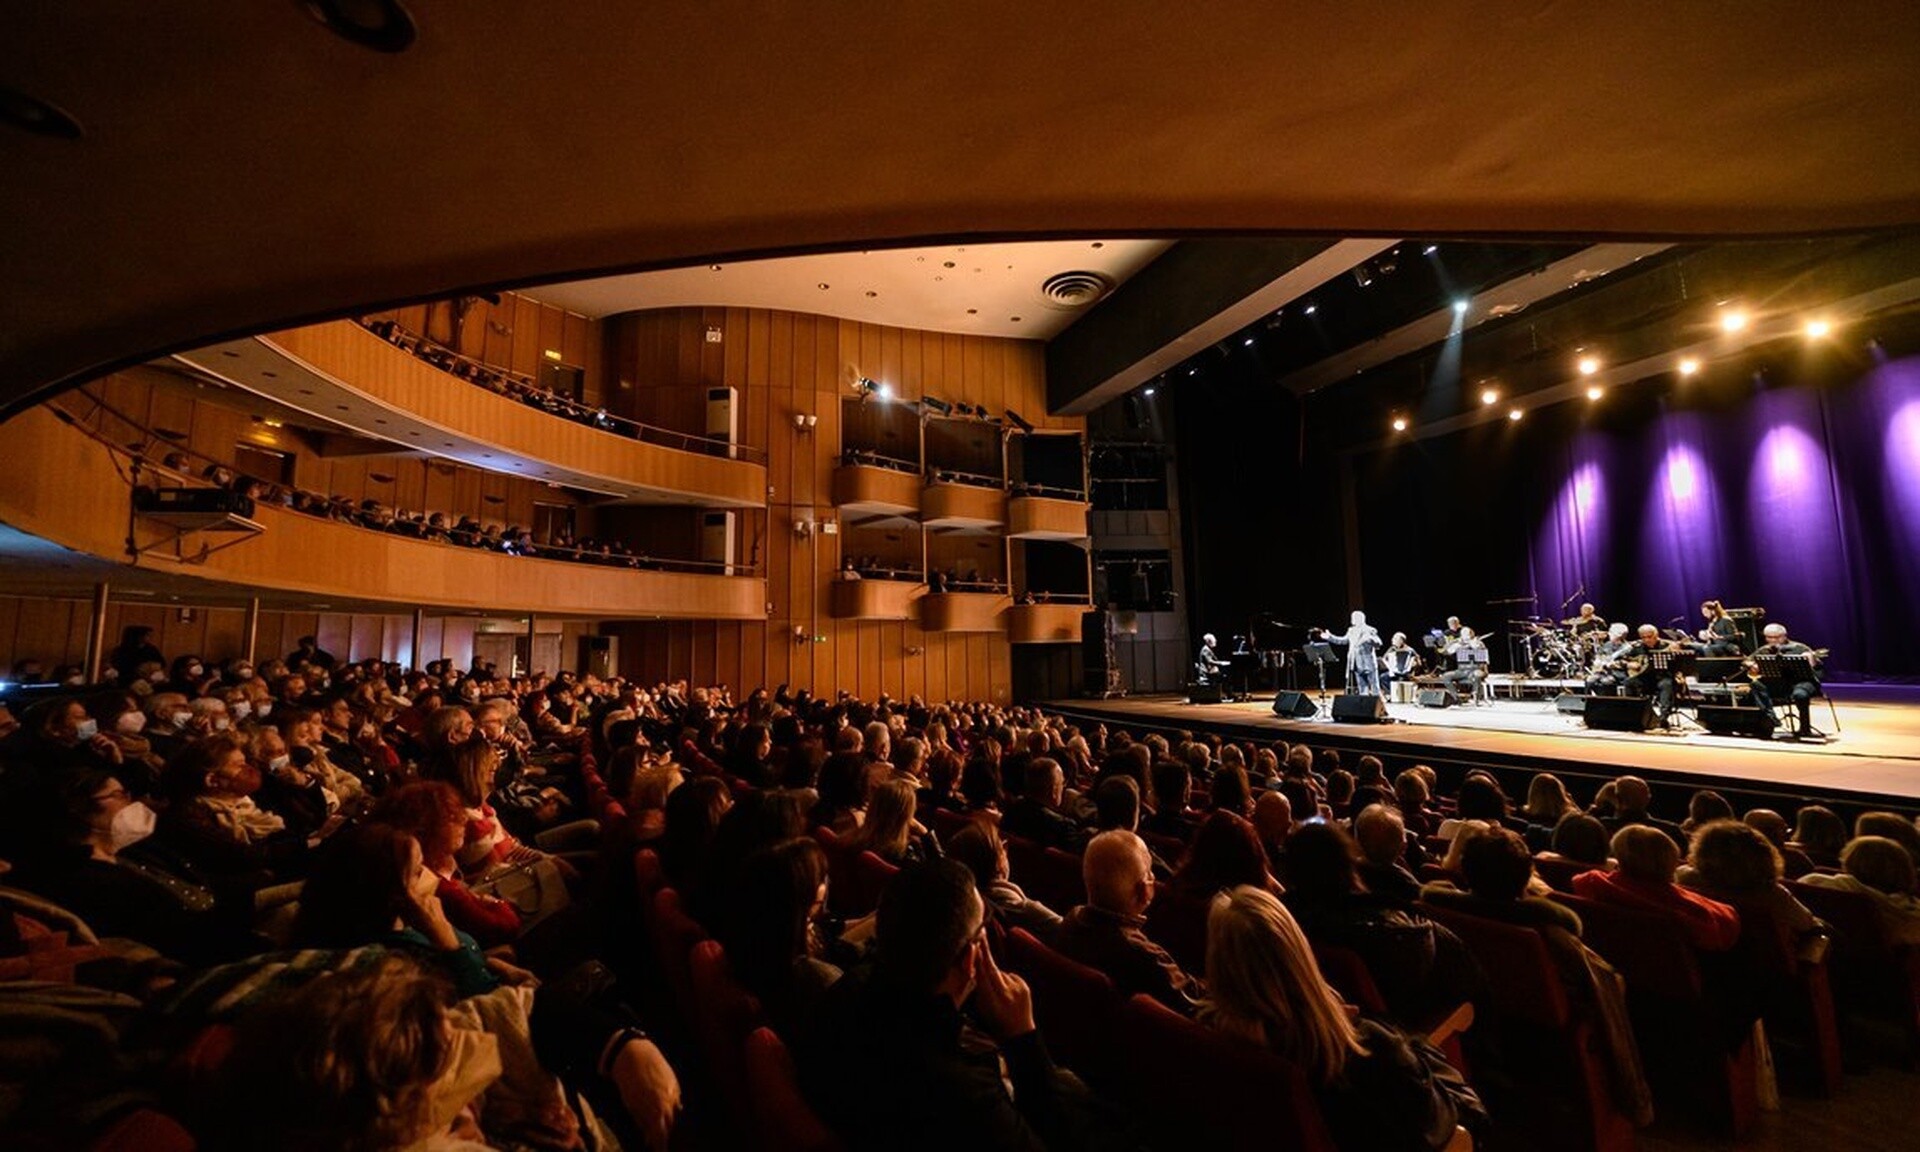 Ολύμπια, Δημοτικό Μουσικό Θέατρο «Μαρία Κάλλας»: Όλες οι εκδηλώσεις του Απριλίου